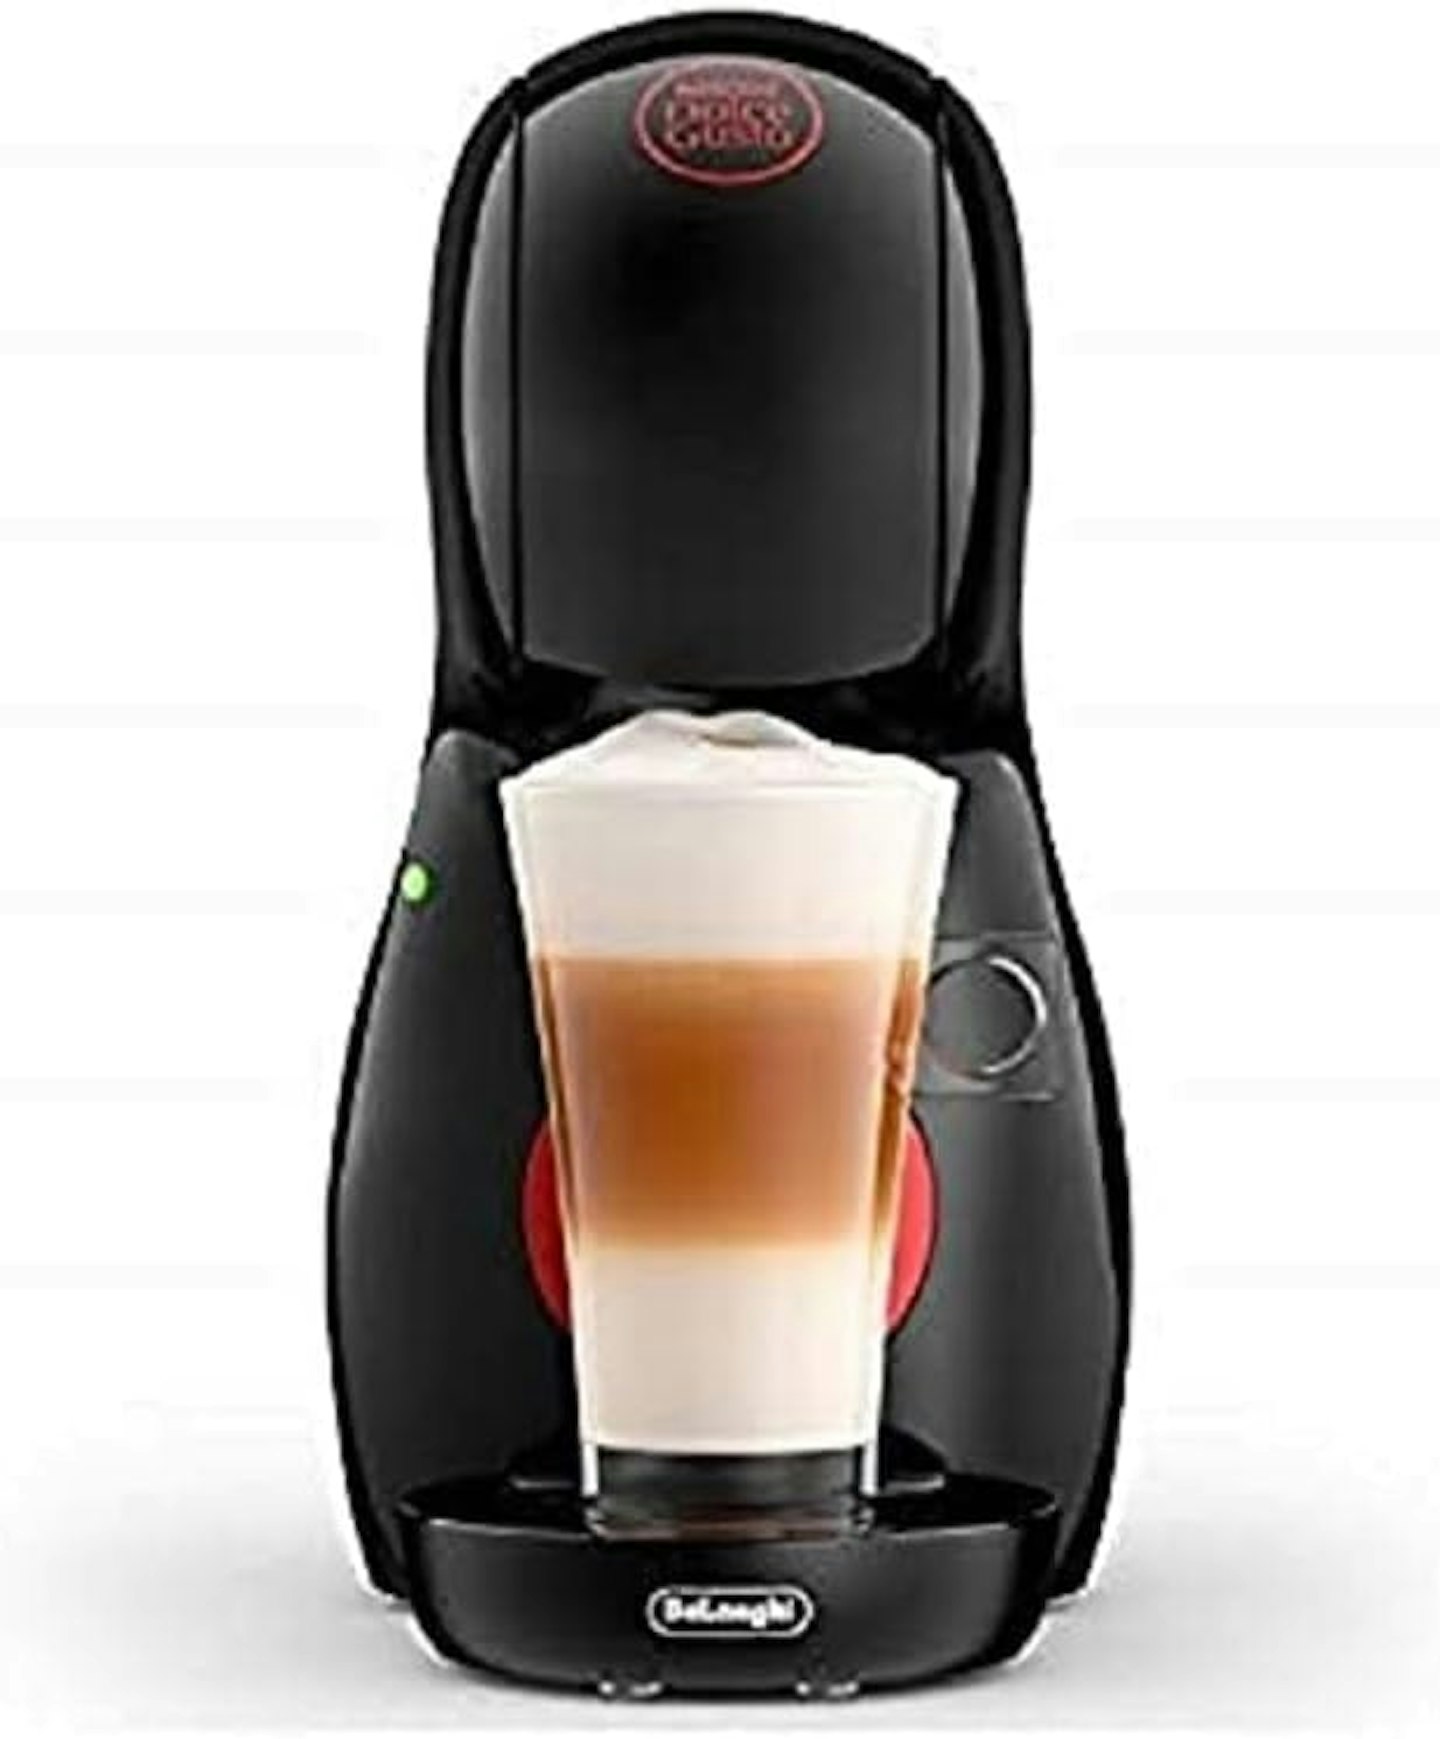 DeLonghi Nescafé Dolce Gusto Piccolo Coffee Machine